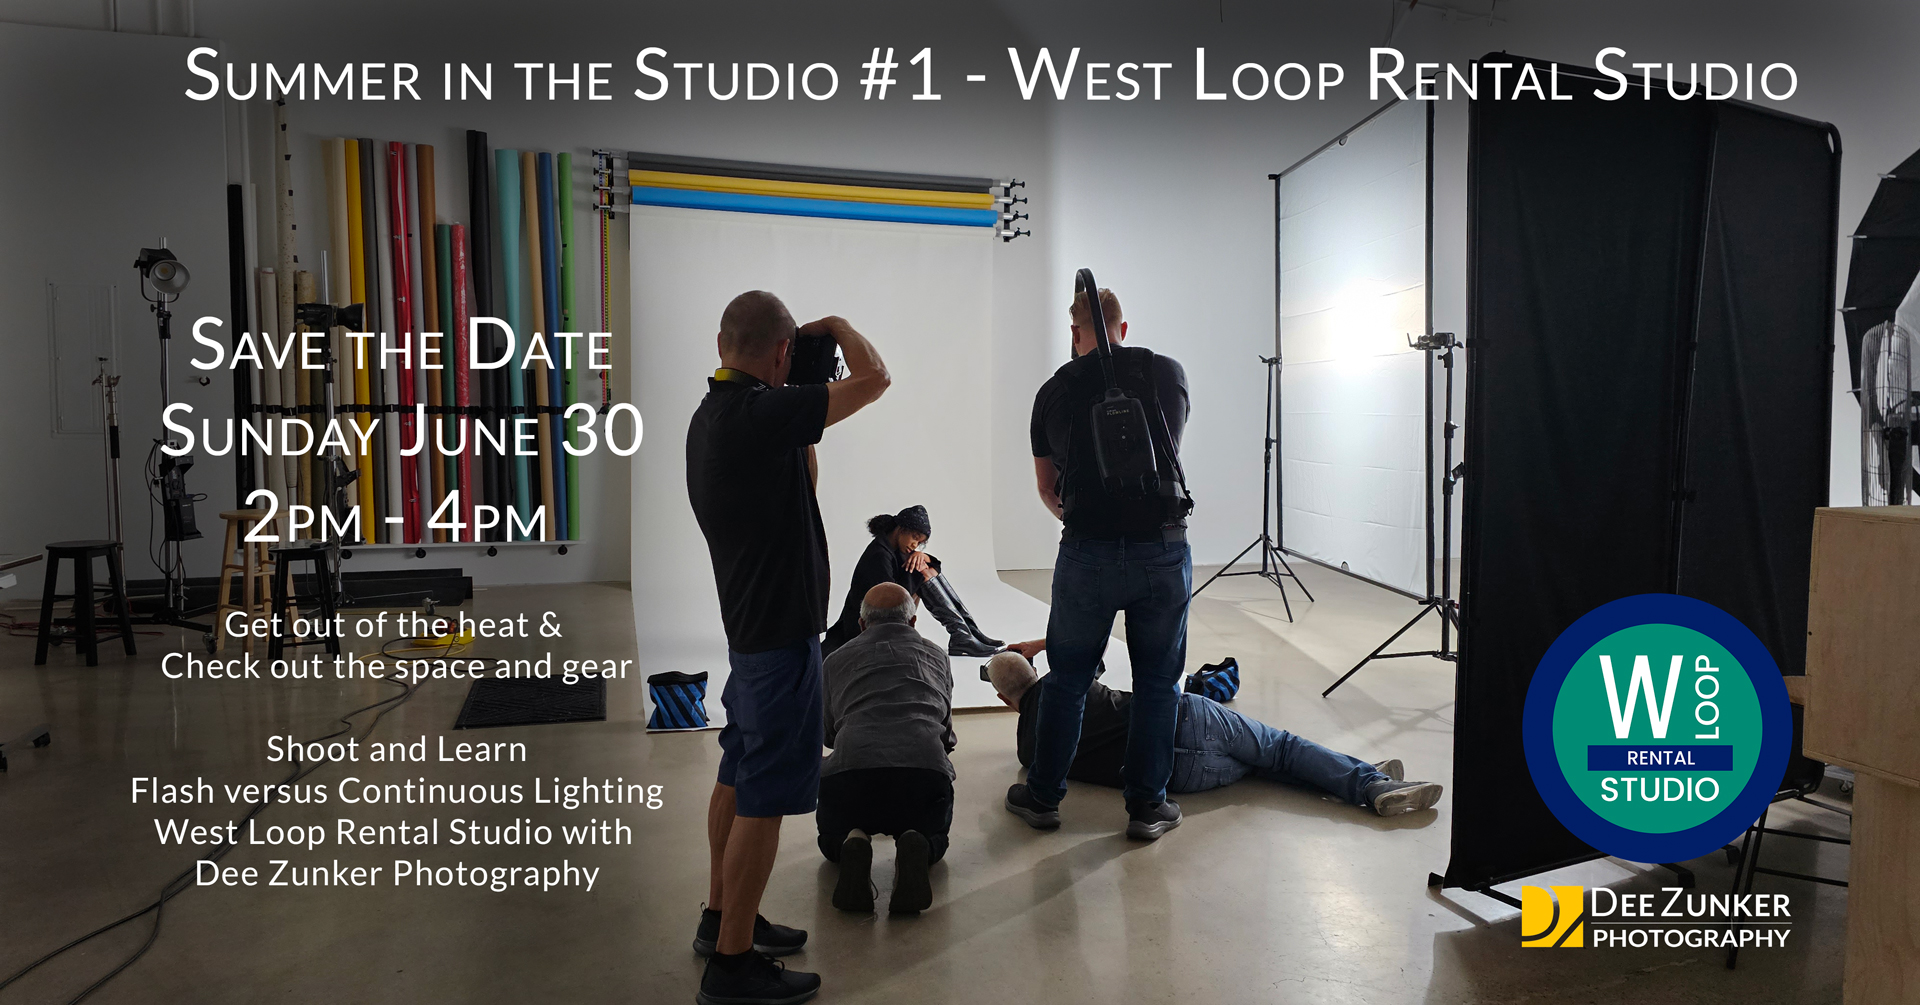 West Loop Photography Rental Studio Summer in the Studio Event